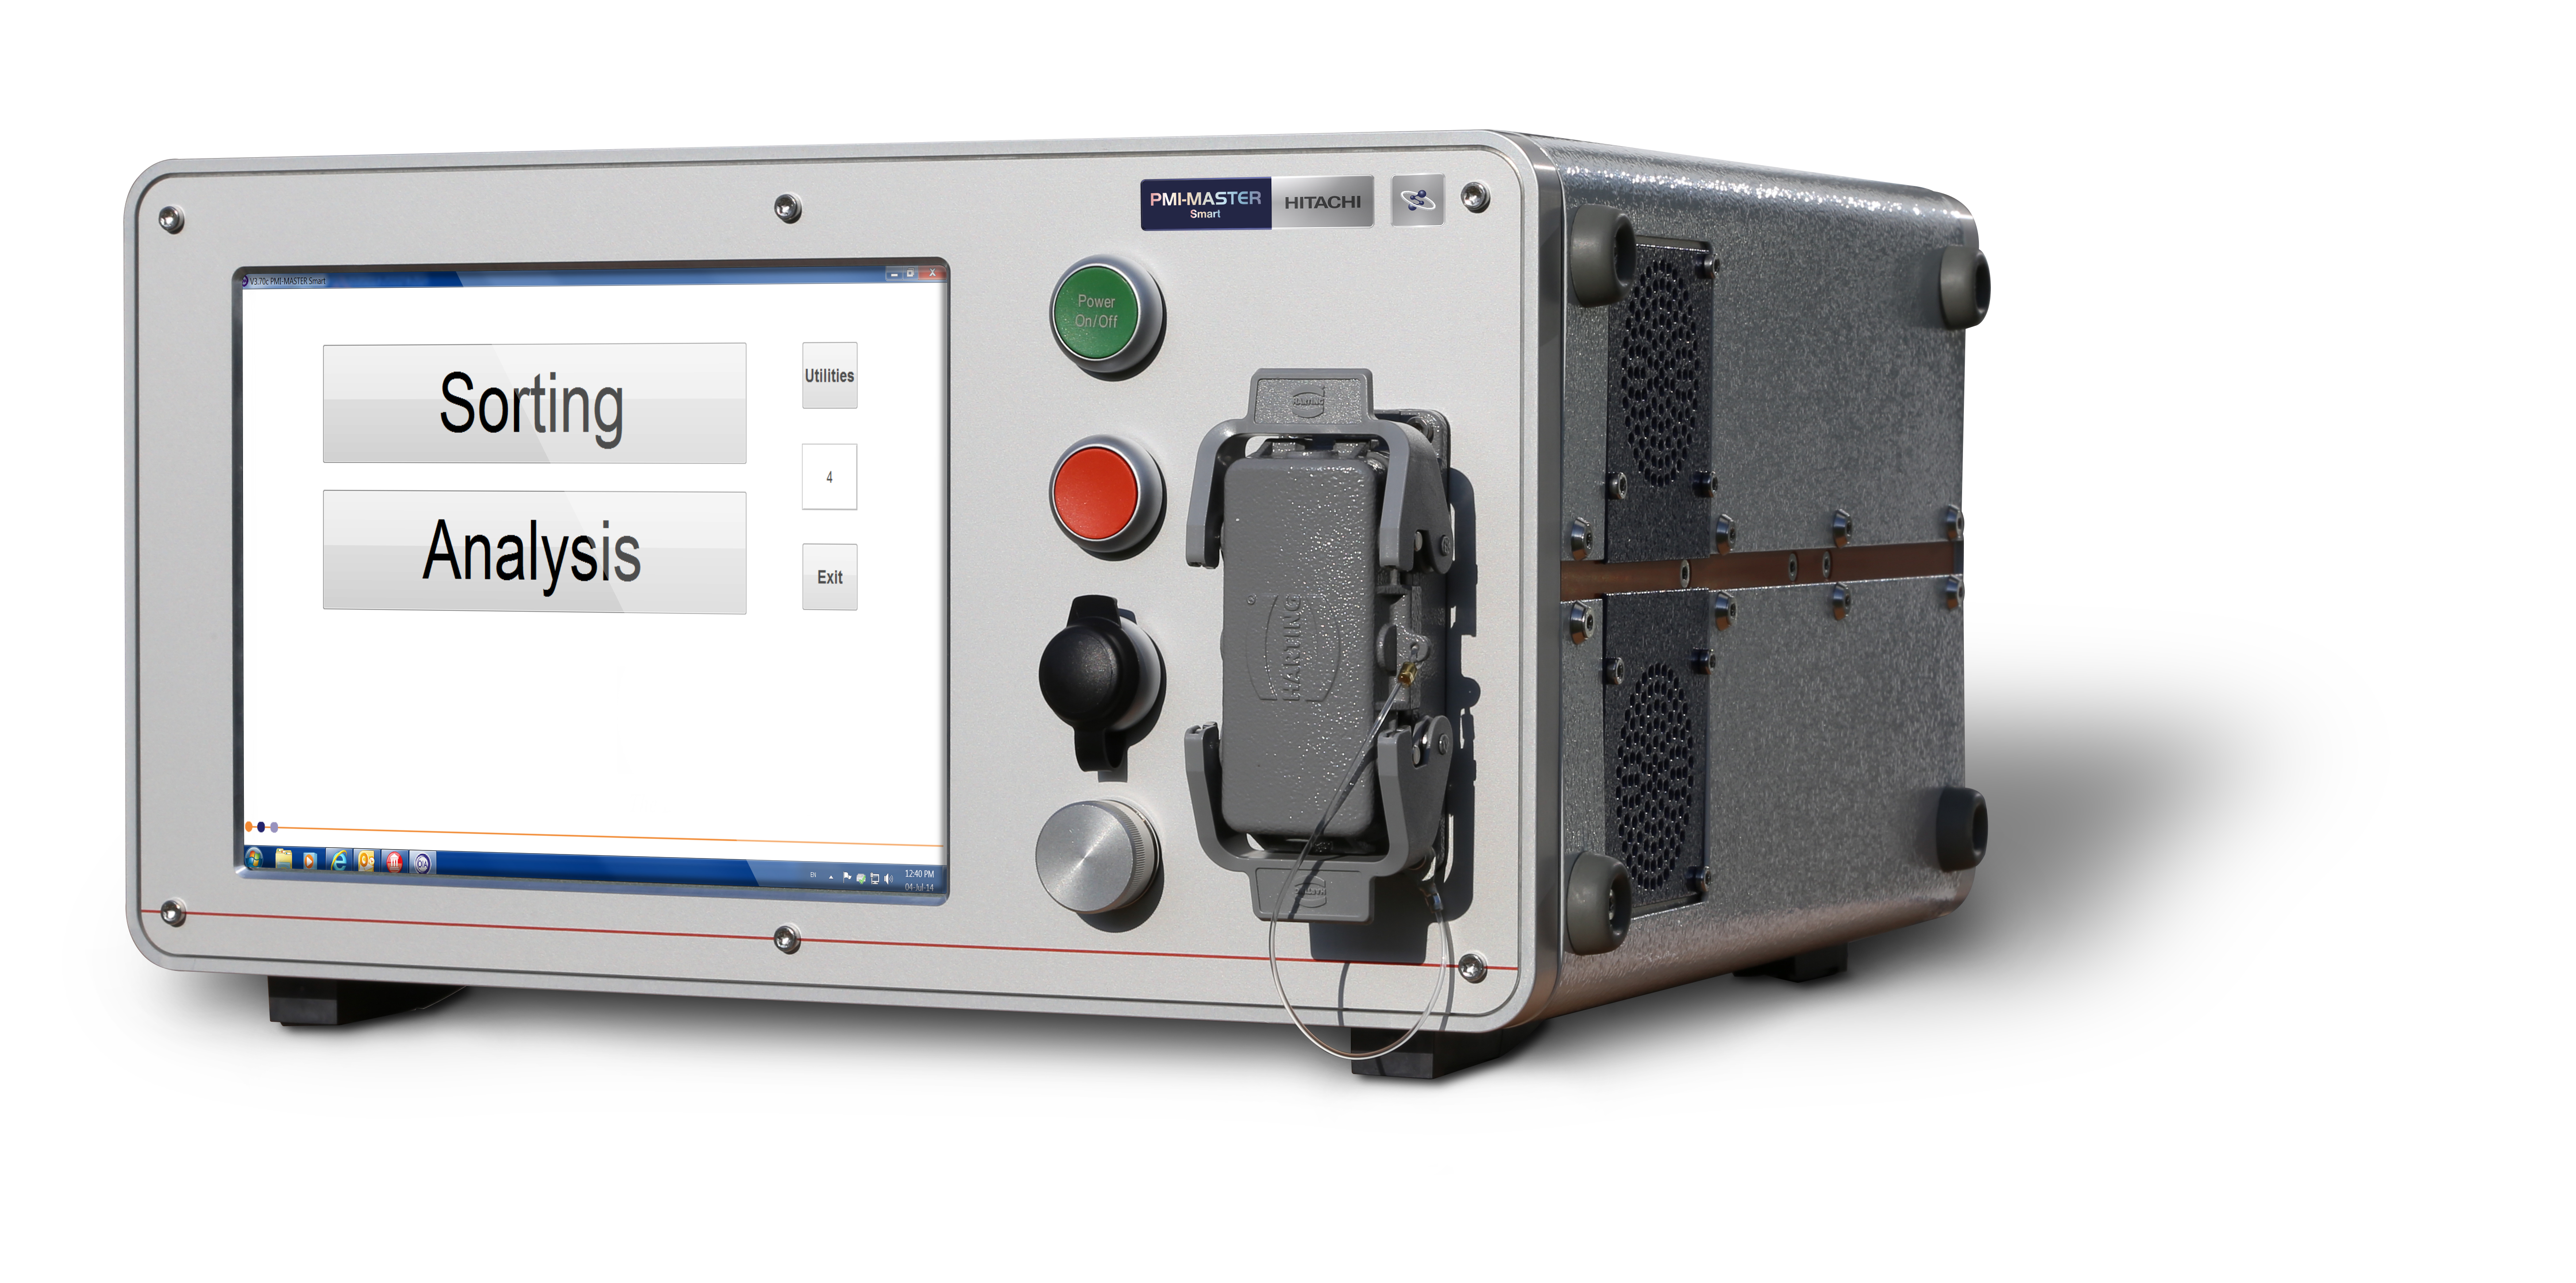 PMI-MASTER Smart便携式直读光谱仪